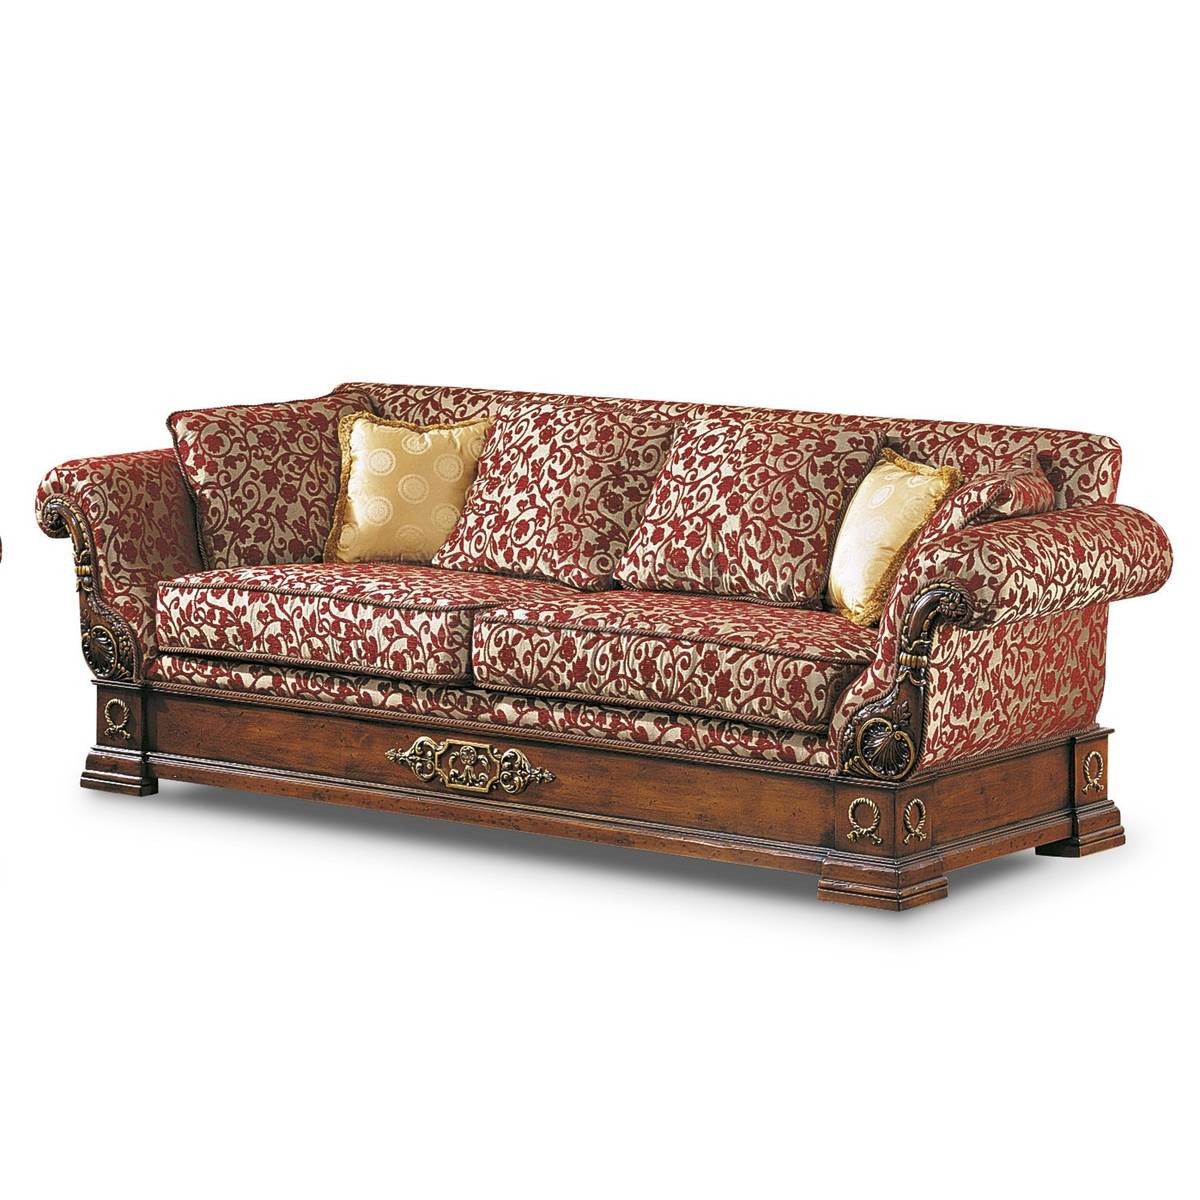 Прямой диван The Upholstery/D351 из Италии фабрики FRANCESCO MOLON